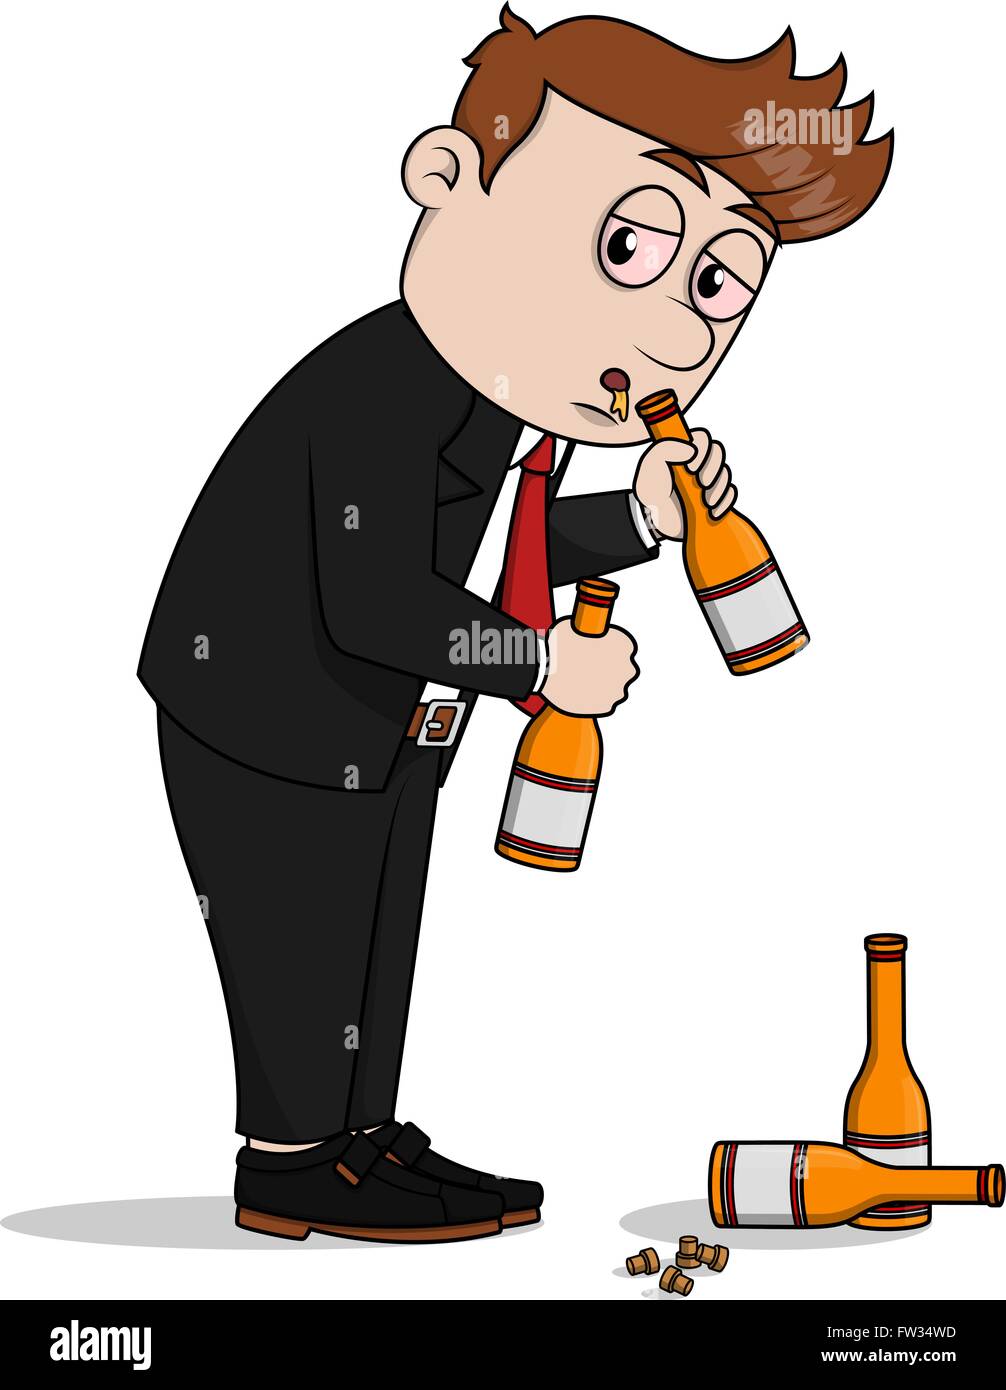 drinking alcohol cartoon